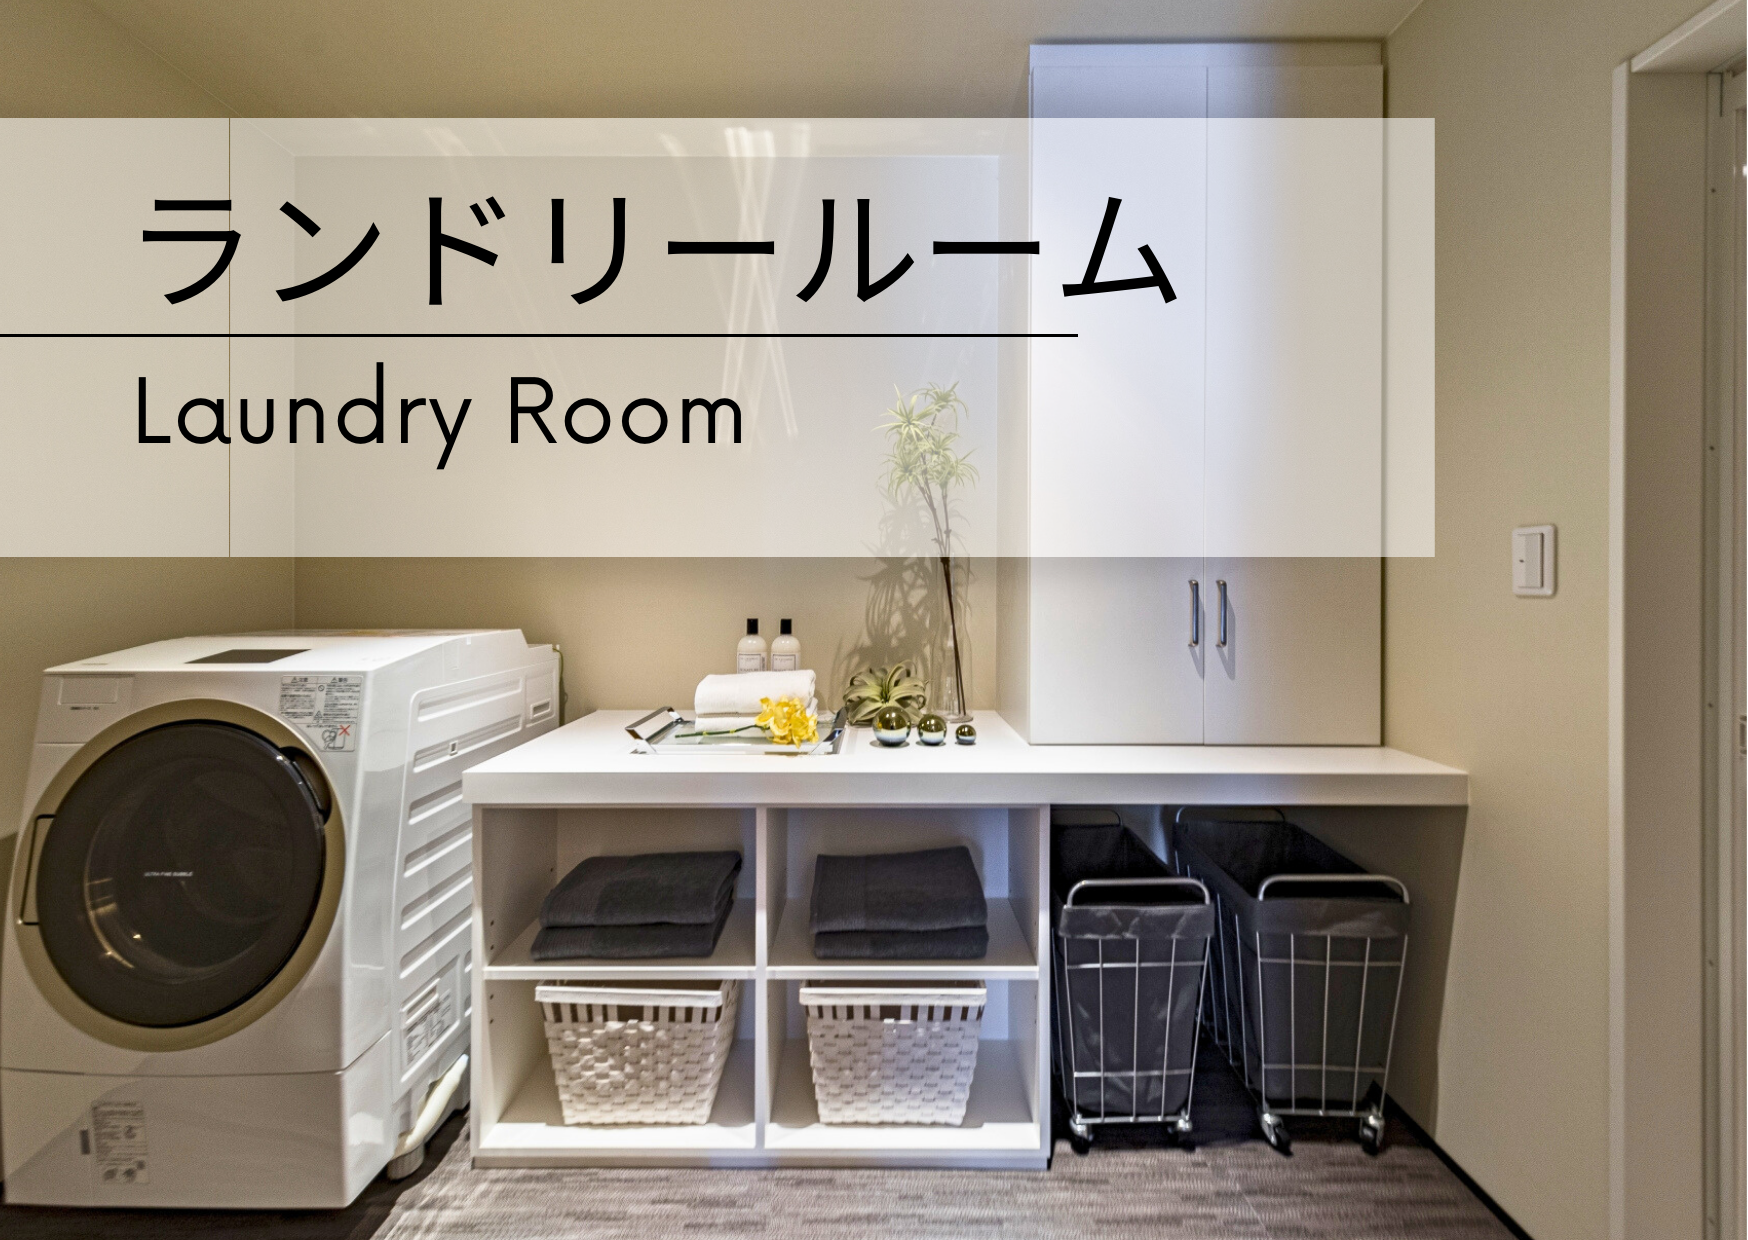 ランドリールーム -Laundry Room-